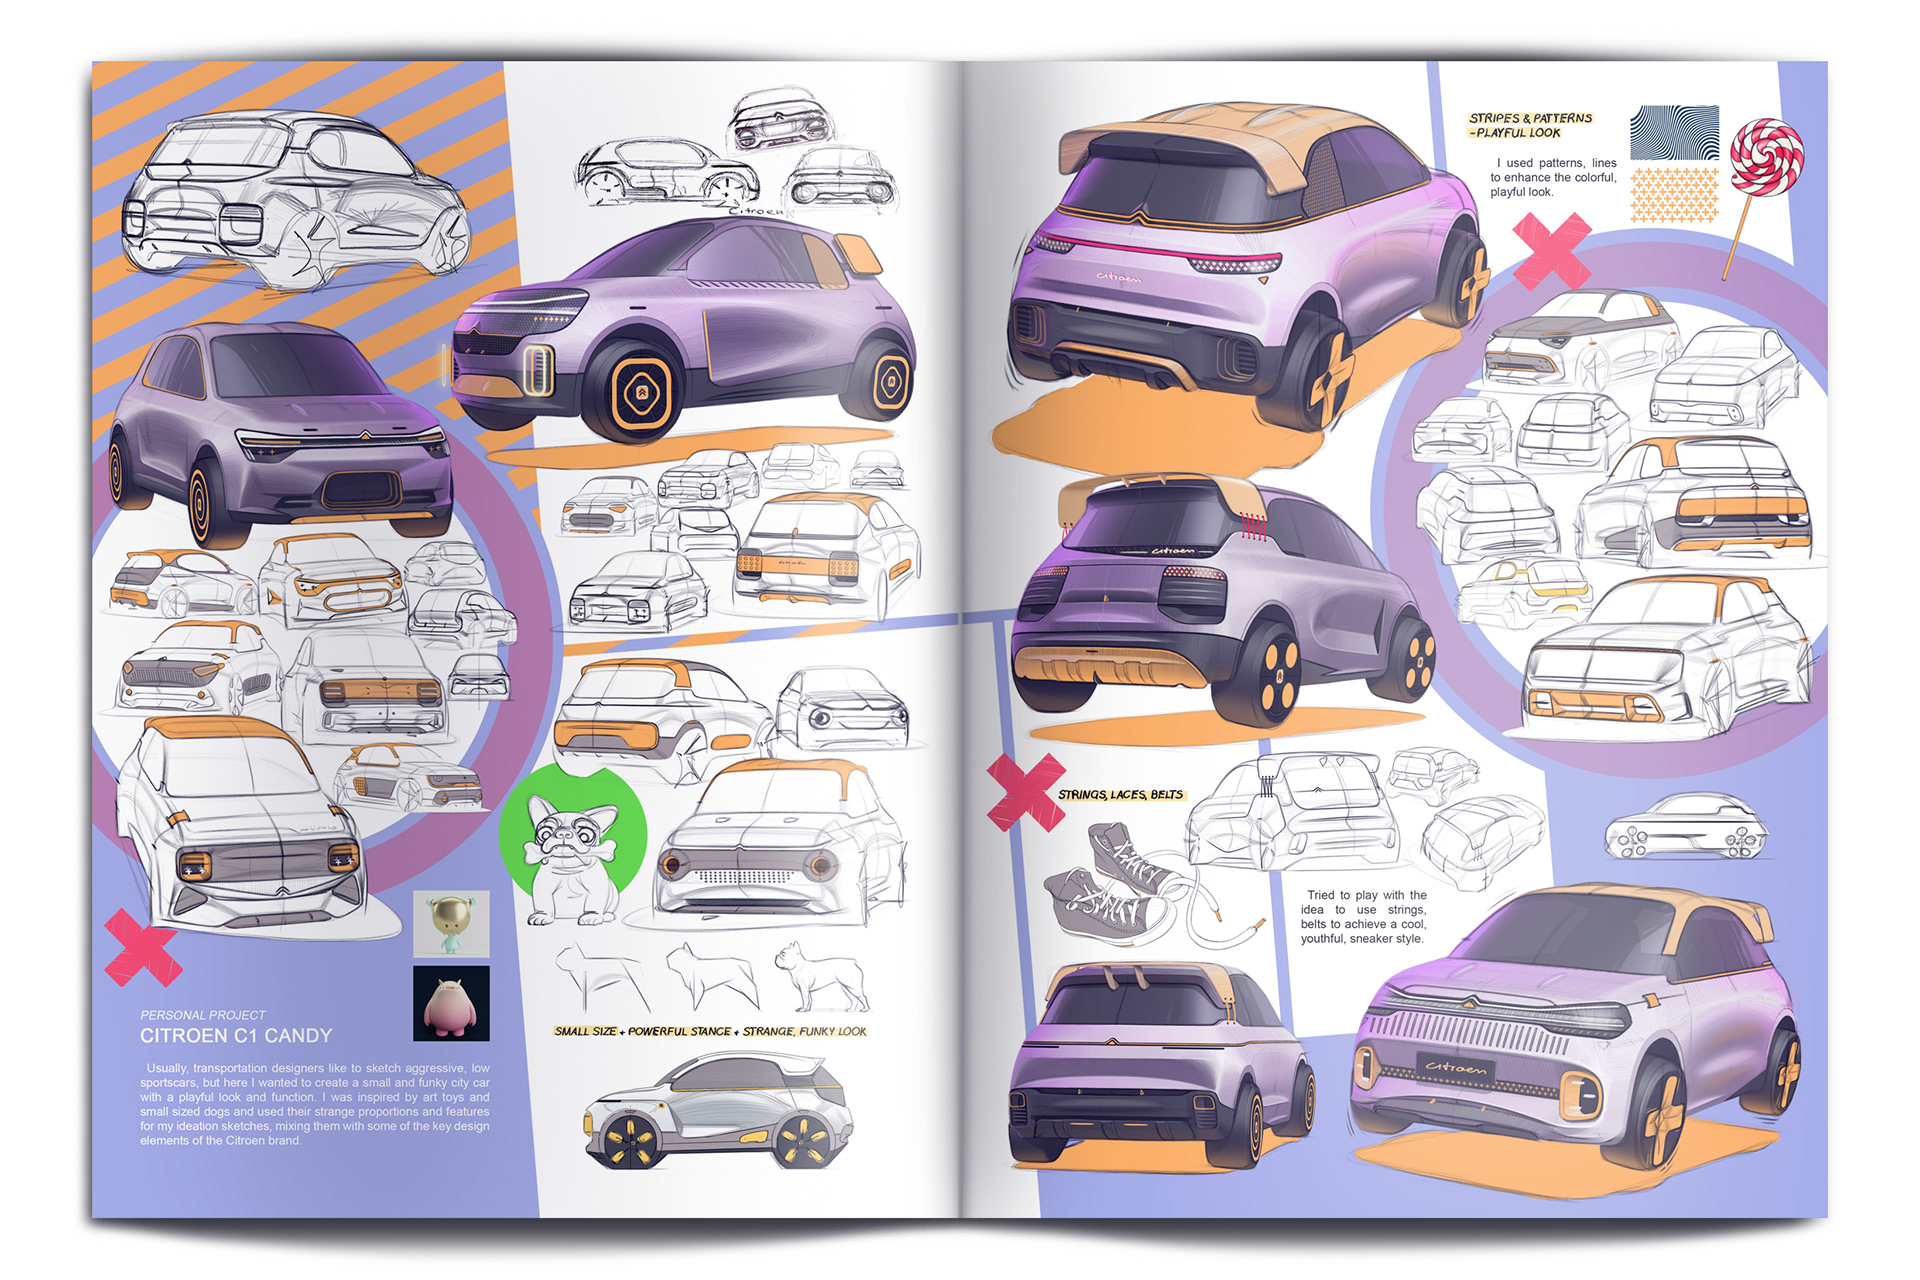 [Présentation] Le design par Citroën - Page 22 288361123458243.60eed0578b88b